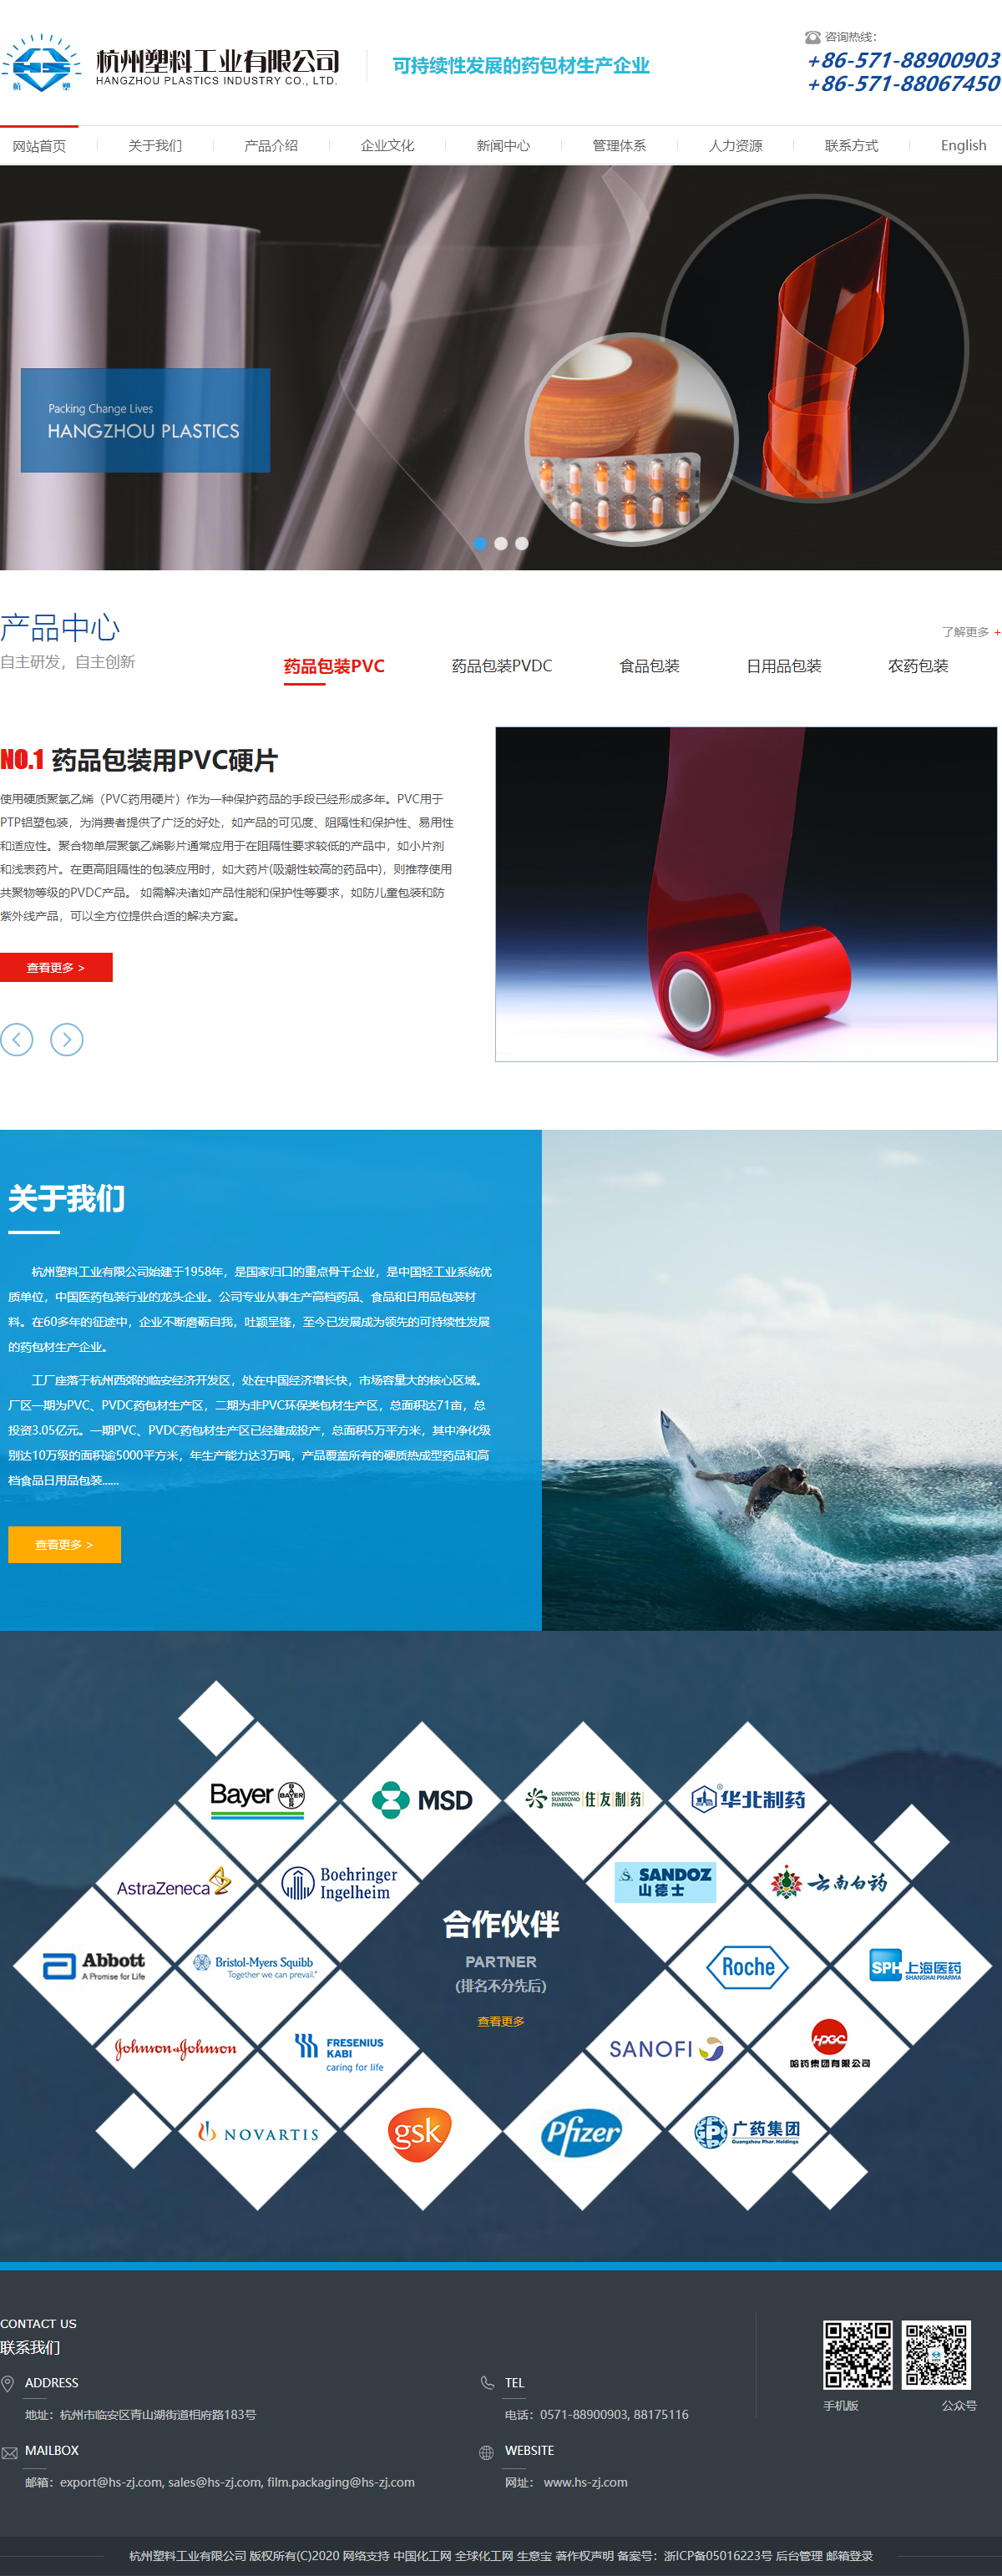 杭州塑料工业有限公司网站案例